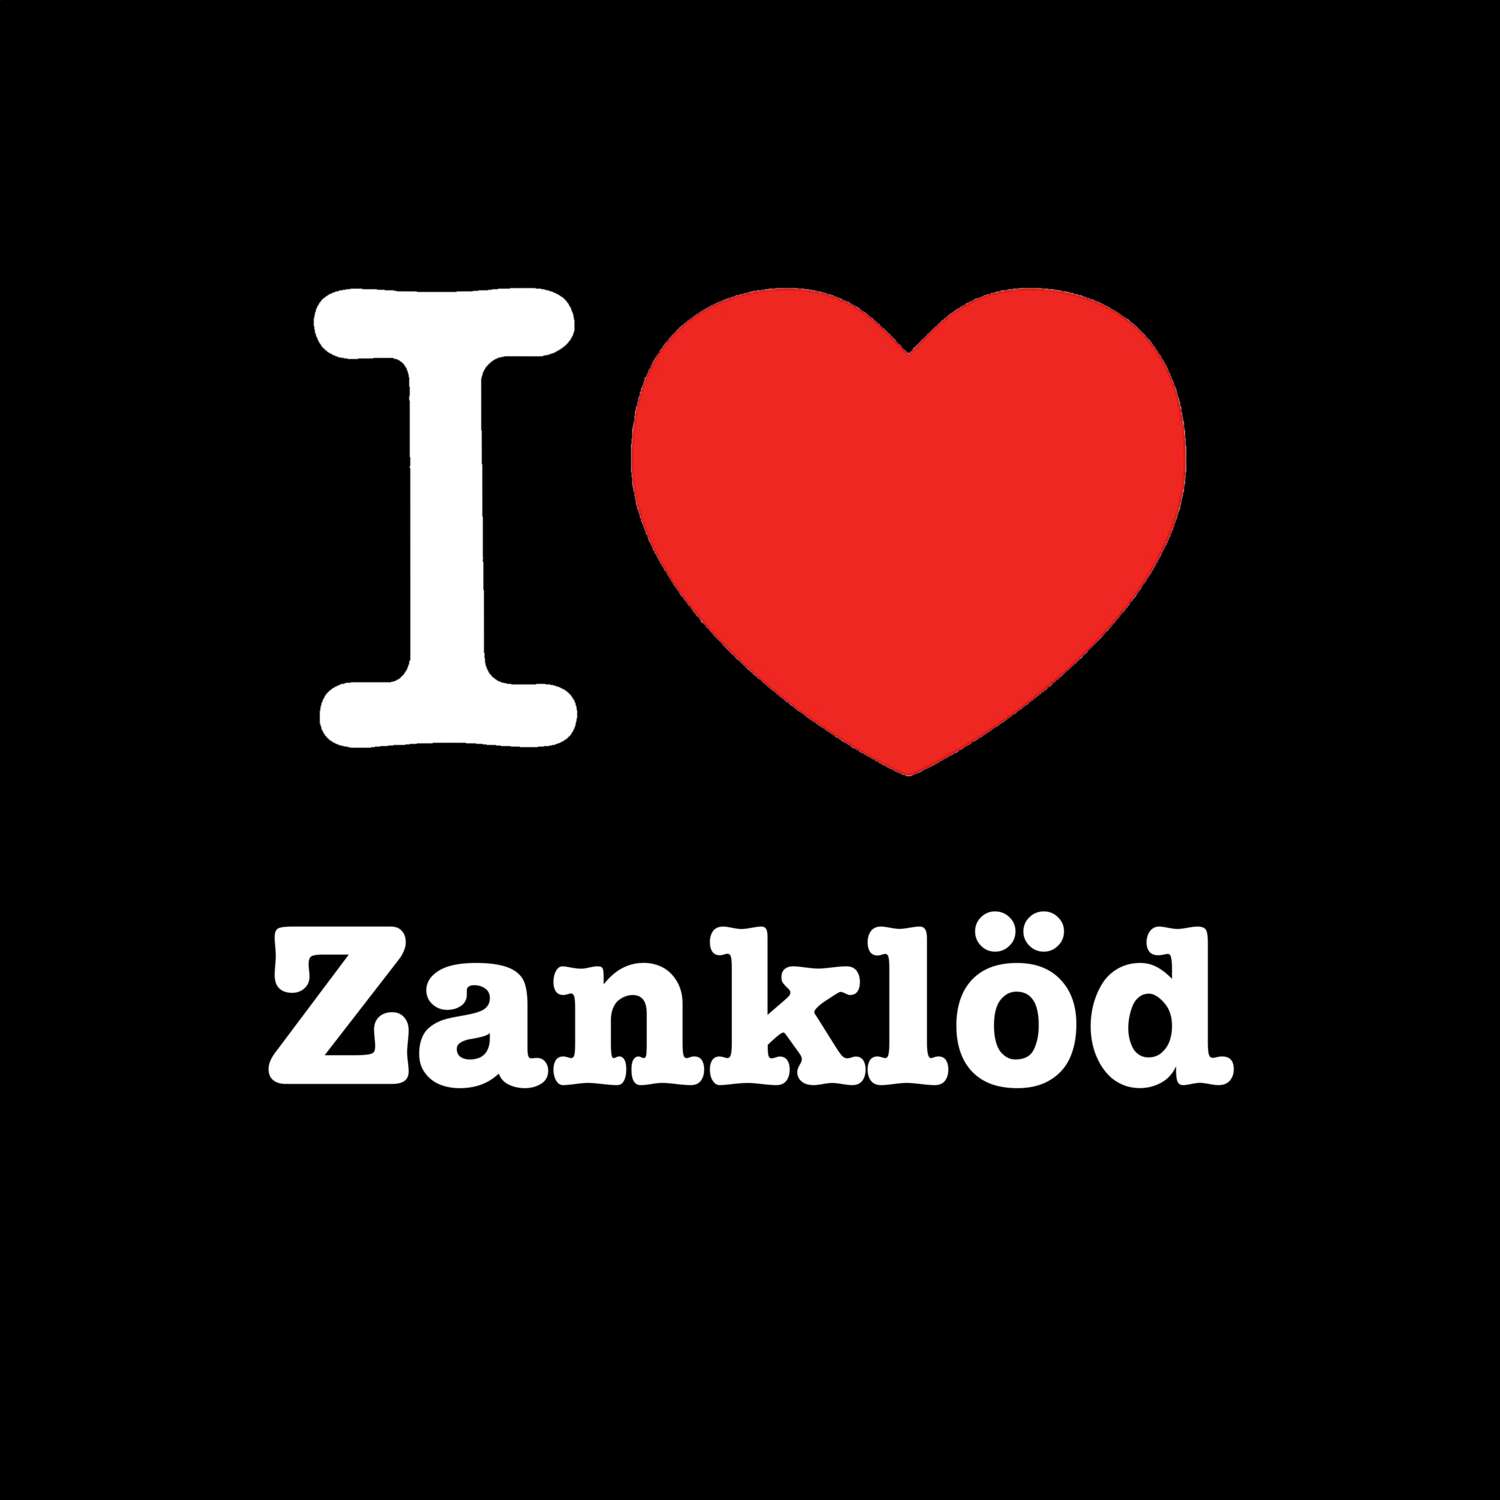 Zanklöd T-Shirt »I love«